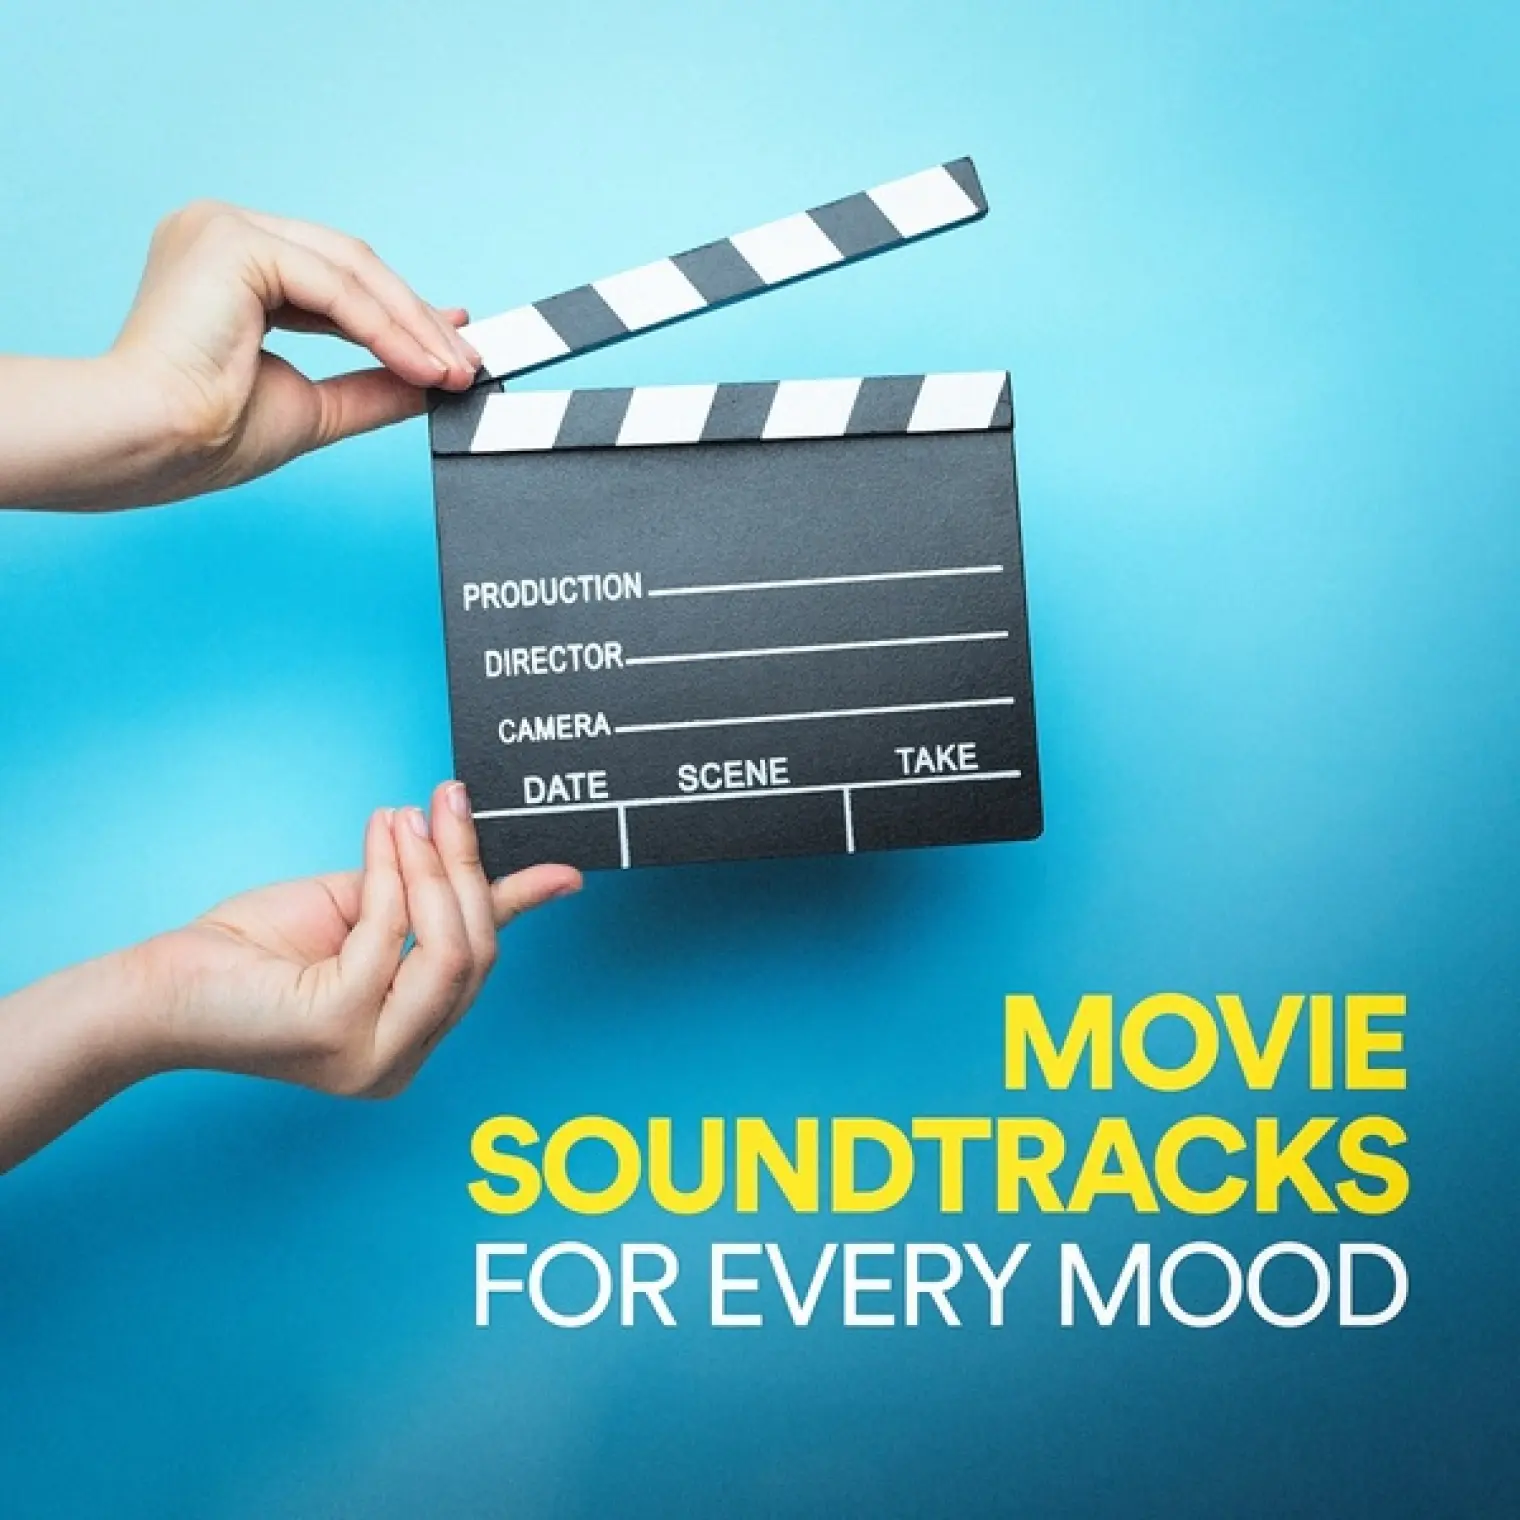 Movie Soundtracks for Every Mood -  Soundtrack 